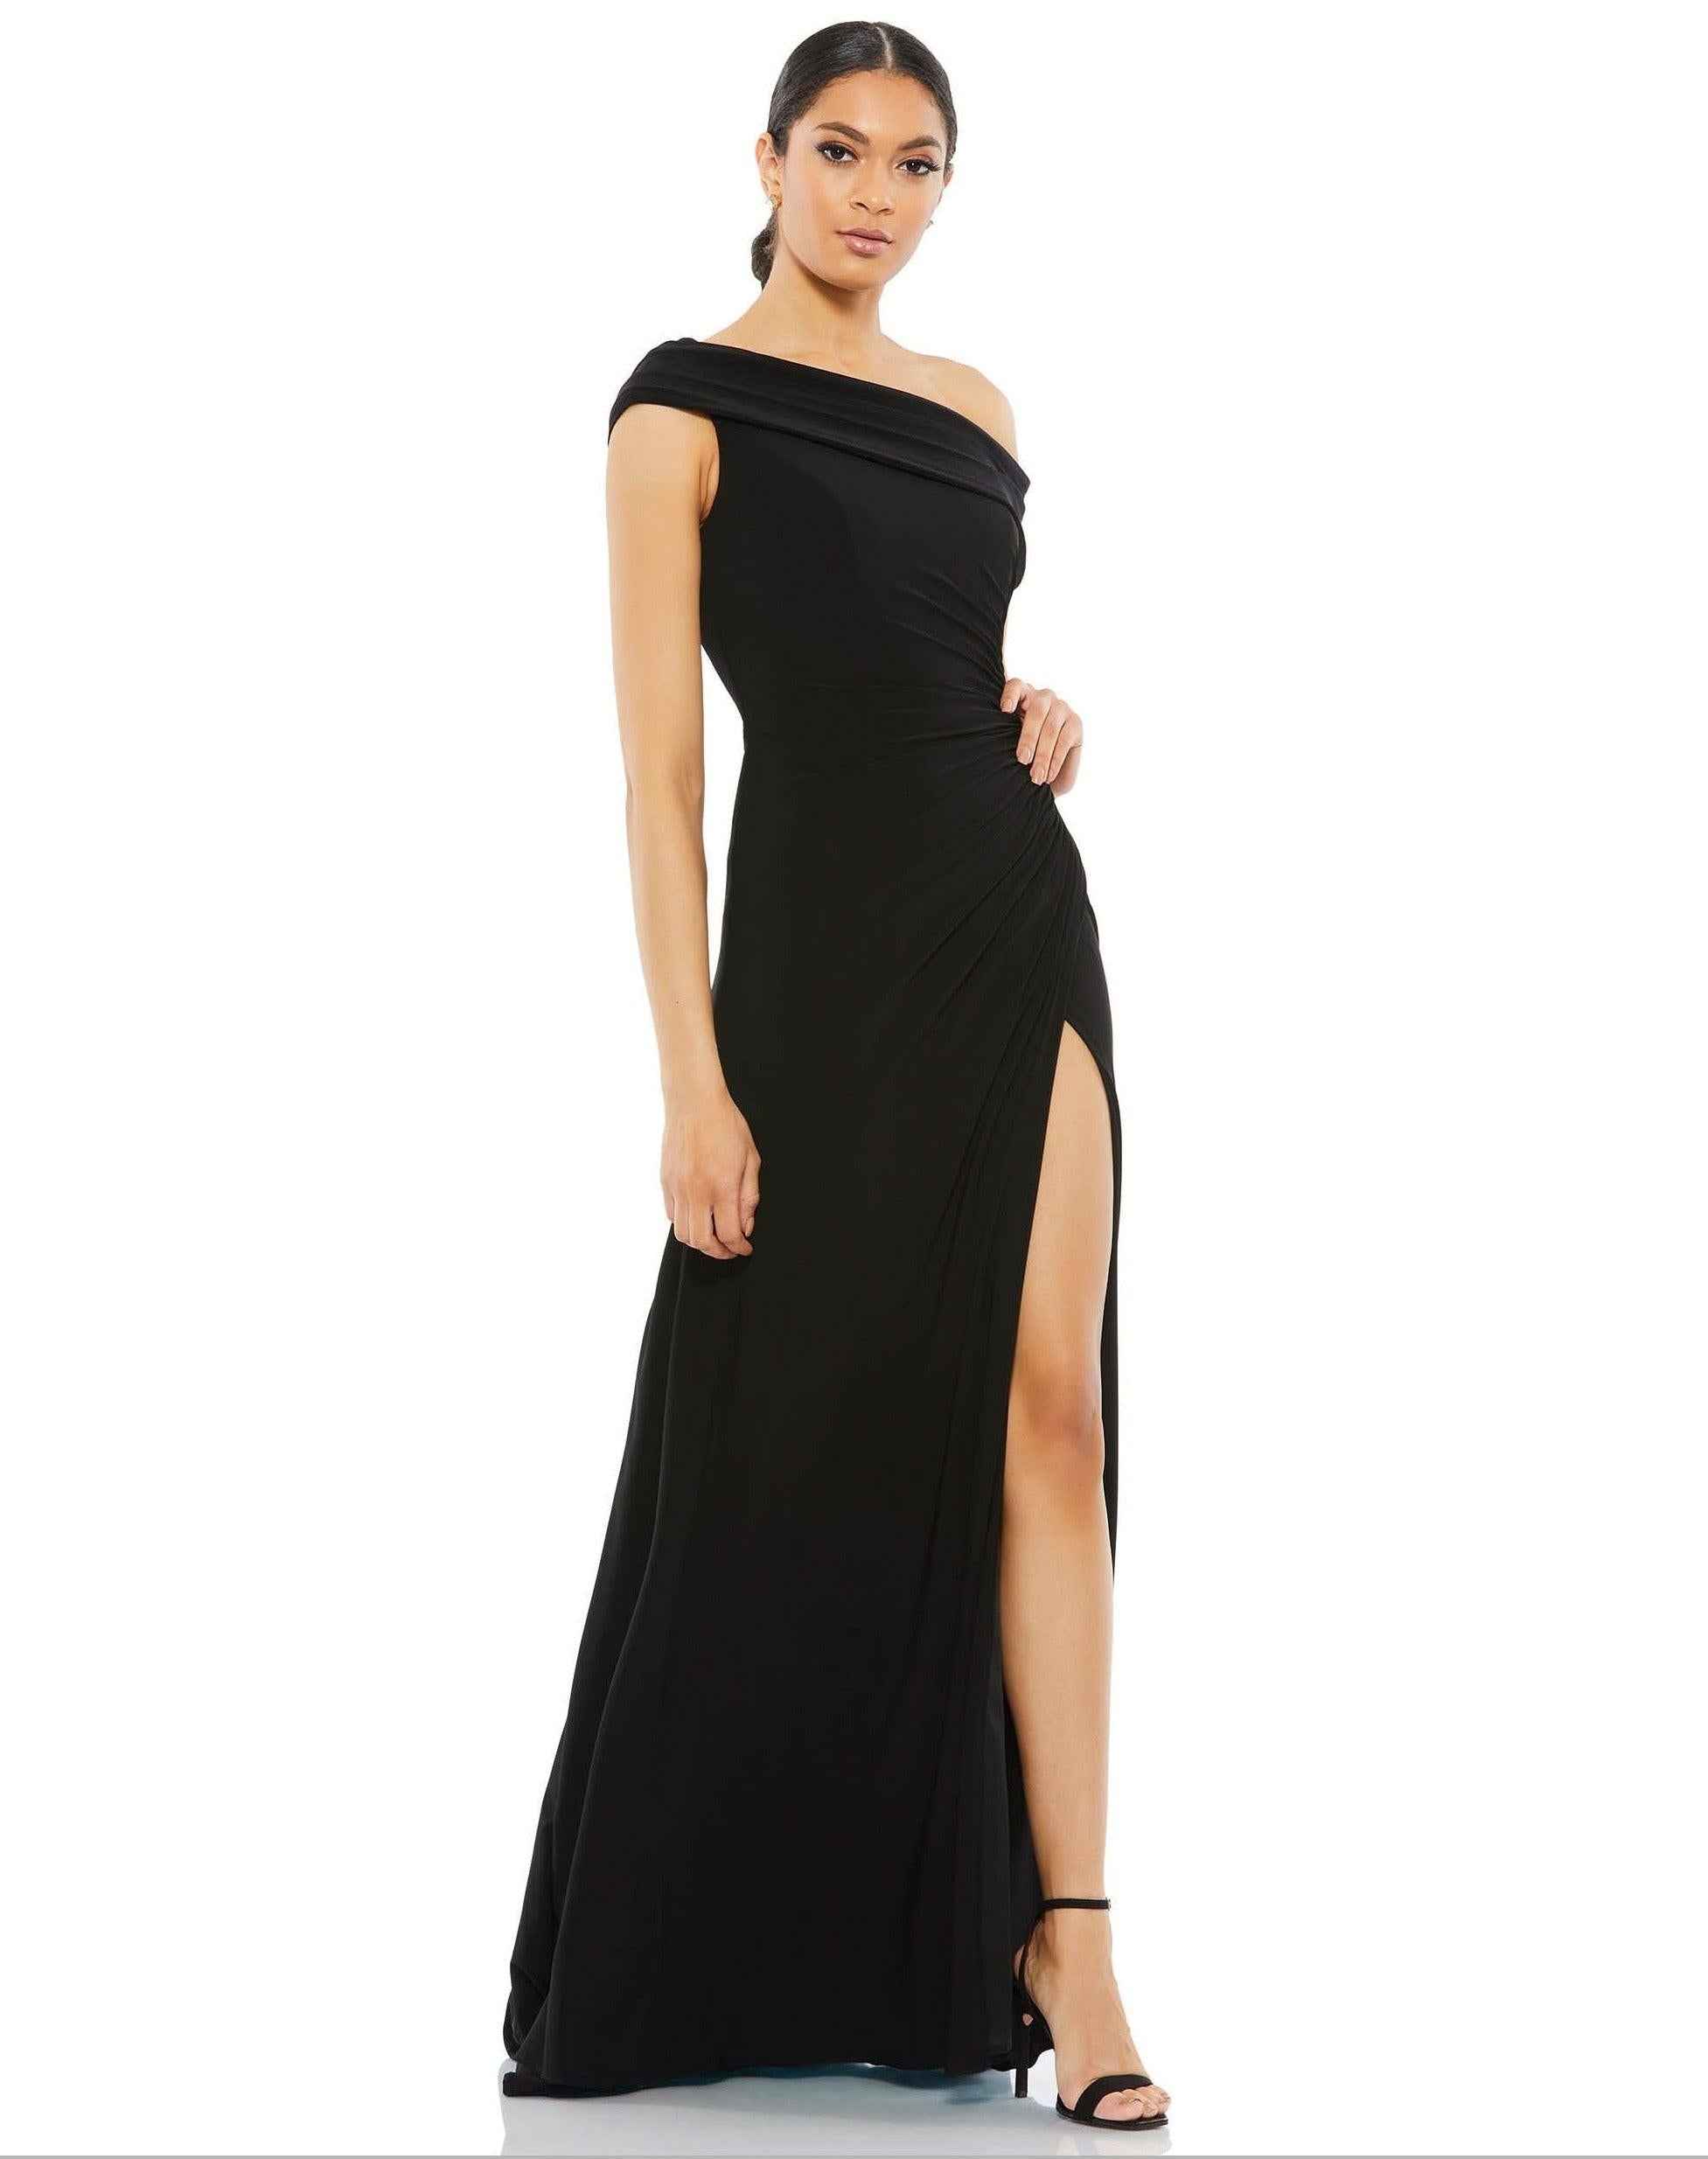 Formal Dresses Prom Long One Shoulder Formal Gown Black